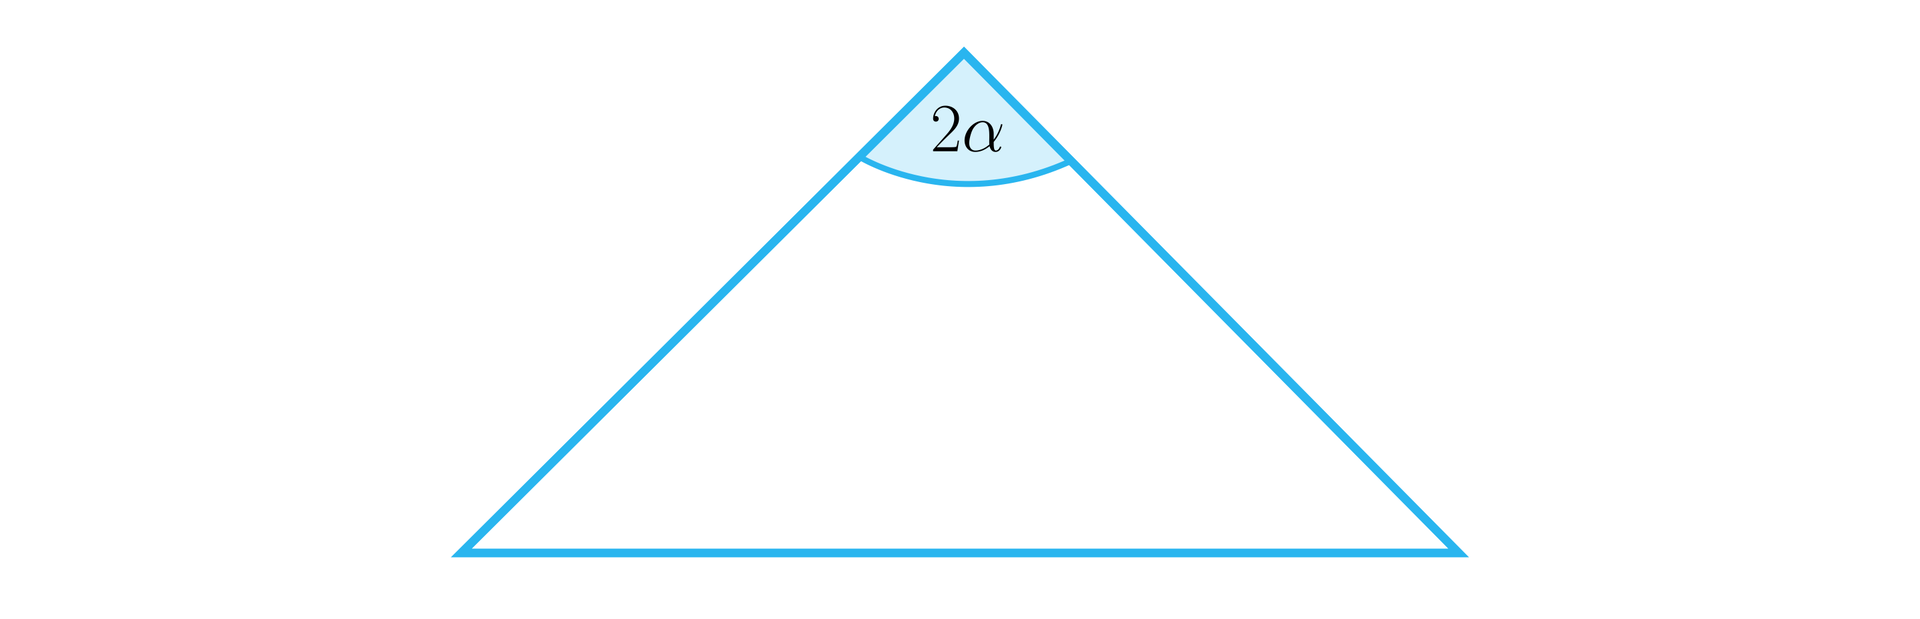 Ilustracja przedstawia trójkąt, kąt pomiędzy ramionami trójkąta podpisano 2α. 